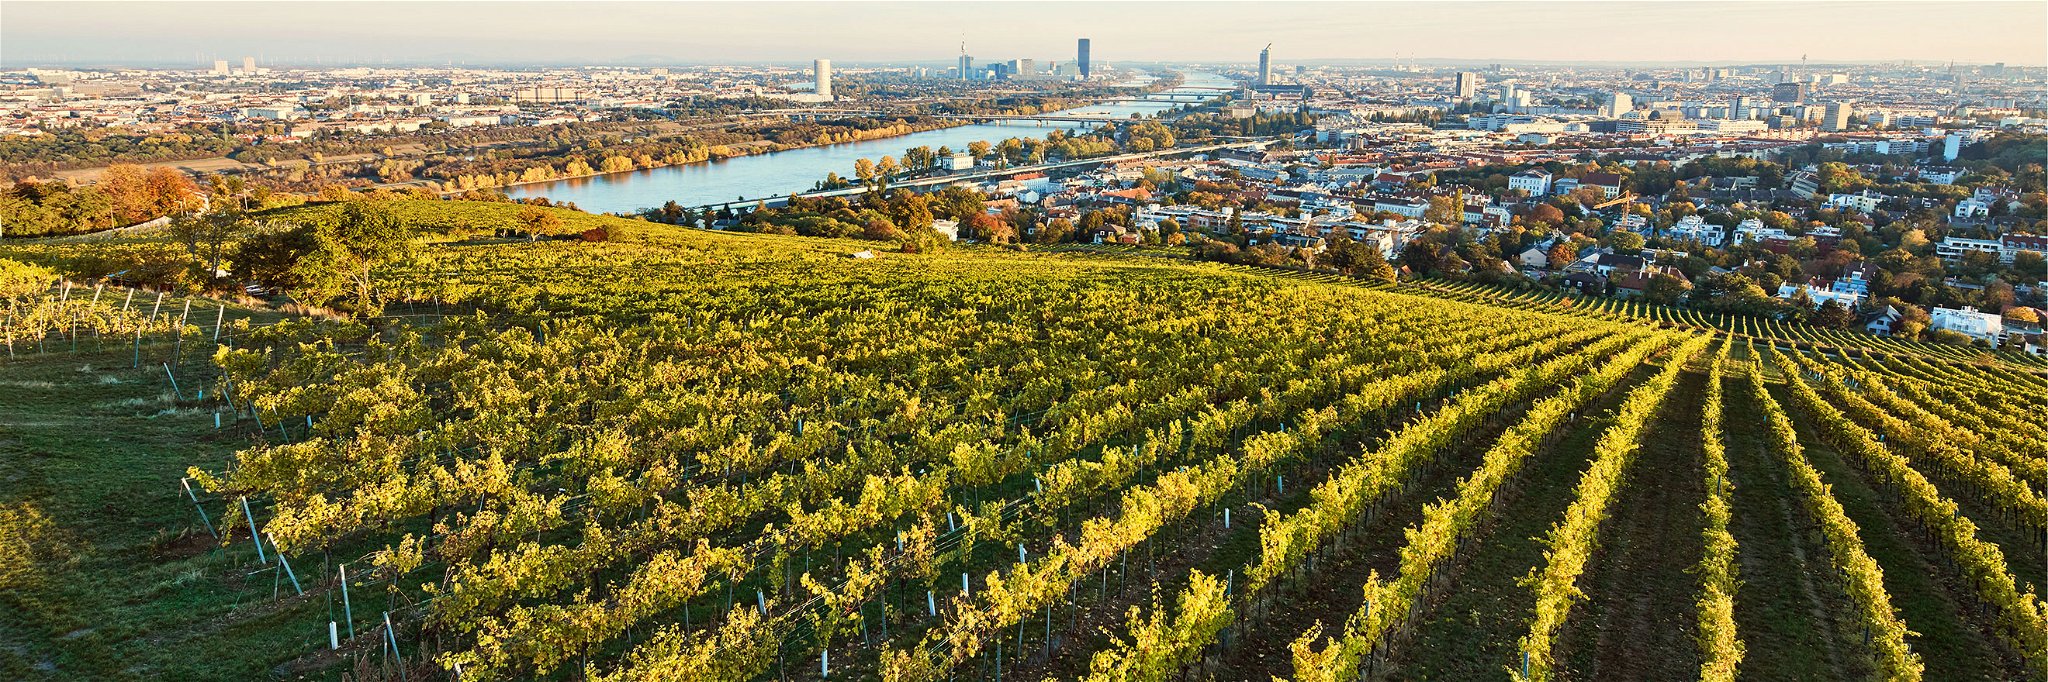 Vom Nussberg, einer der besten Weinrieden Wiens, eröffnet sich ein wunderbarer Blick auf die Donaumetropole.